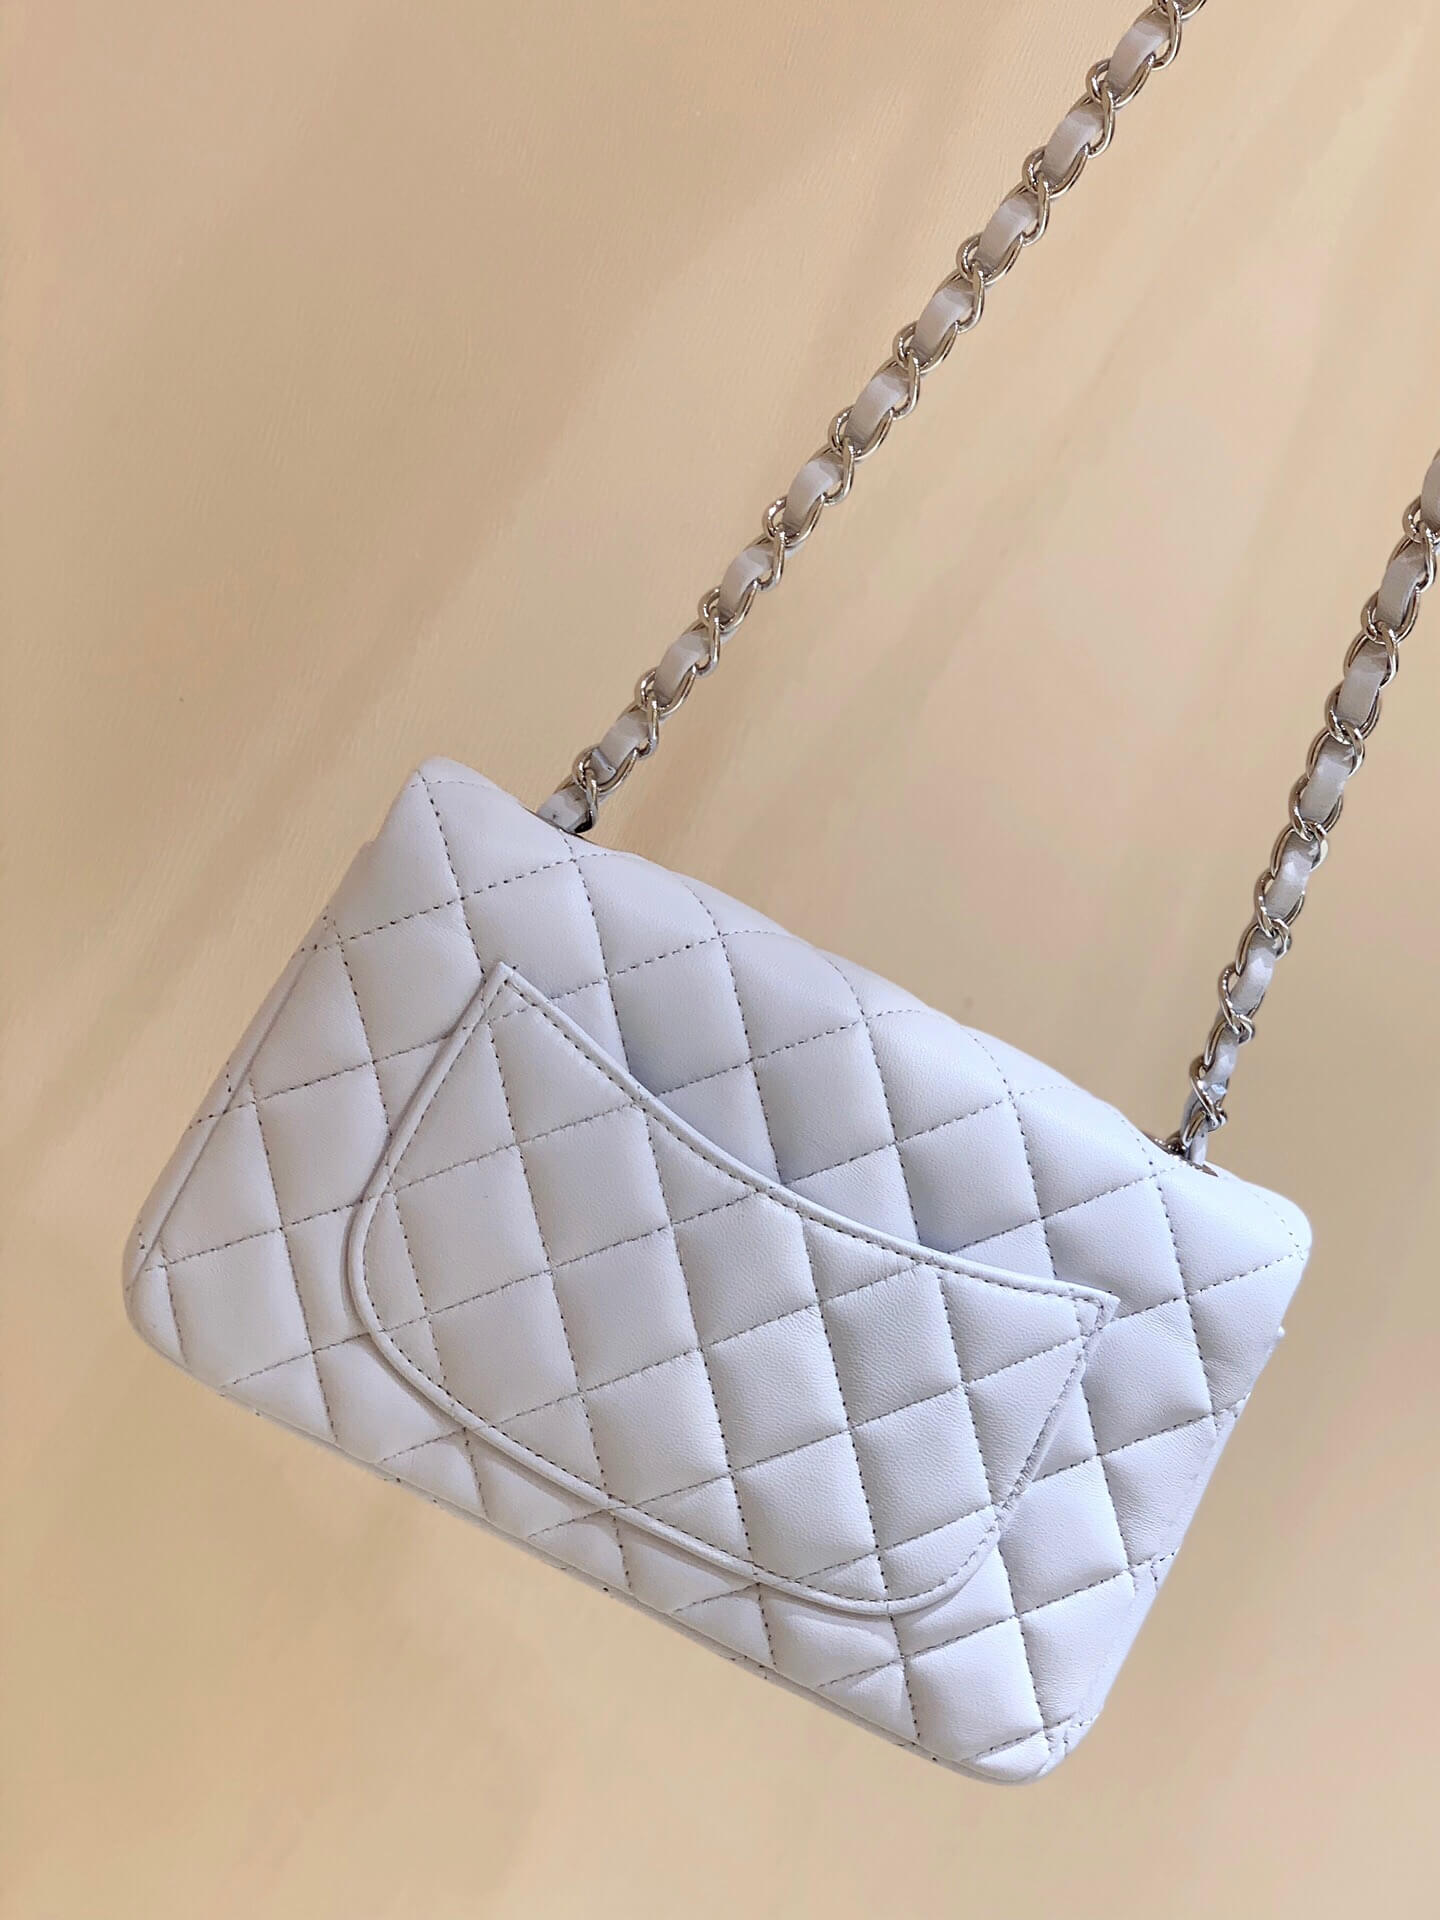 Chanel CF20大mini Classic flap bag A01116羊皮白色